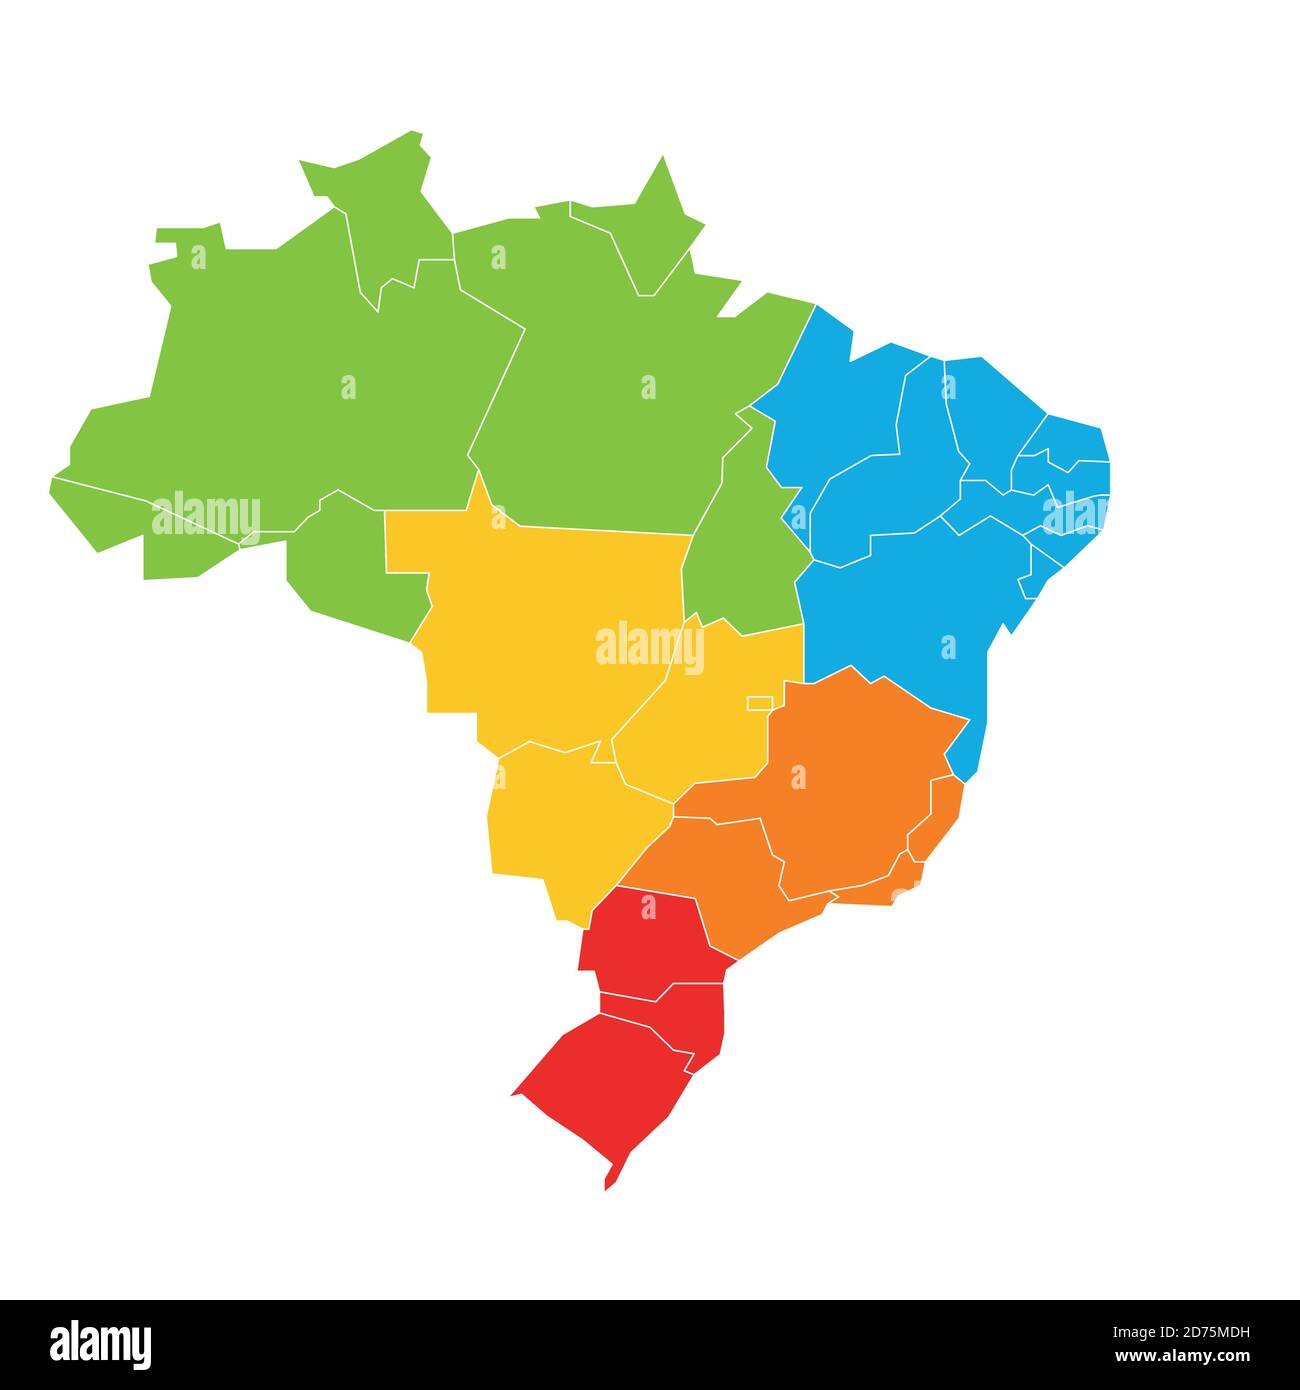 Bunte leere politische Karte von Brasilien. Staaten teilen sich durch Farbe in 5 Regionen. Einfache flache Vektorkarte. Stock Vektor